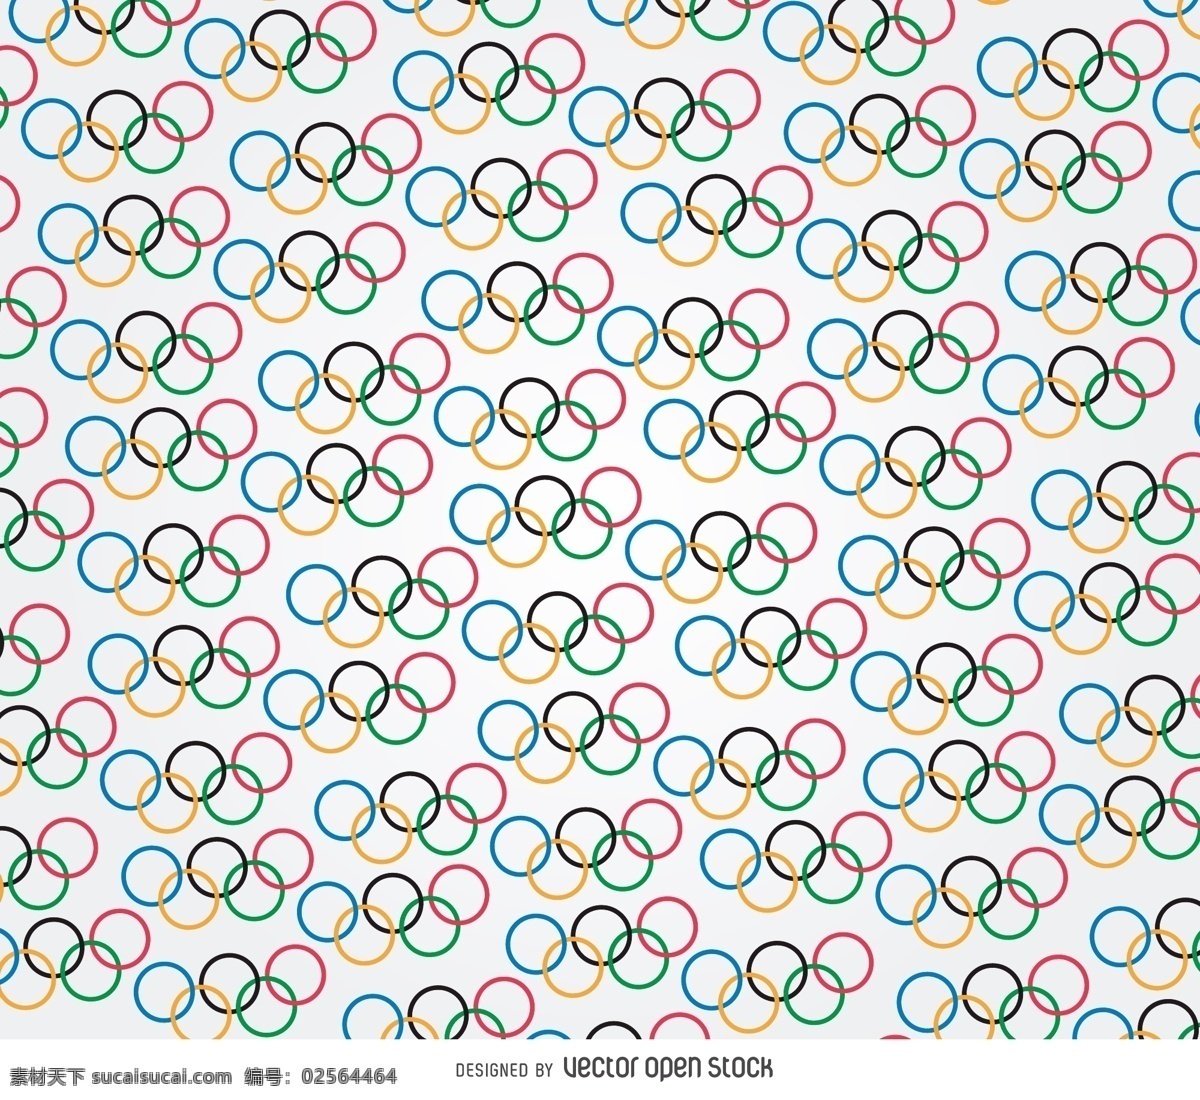 奥运五环图案 背景壁纸 节日和季节 运动 纹理和图案